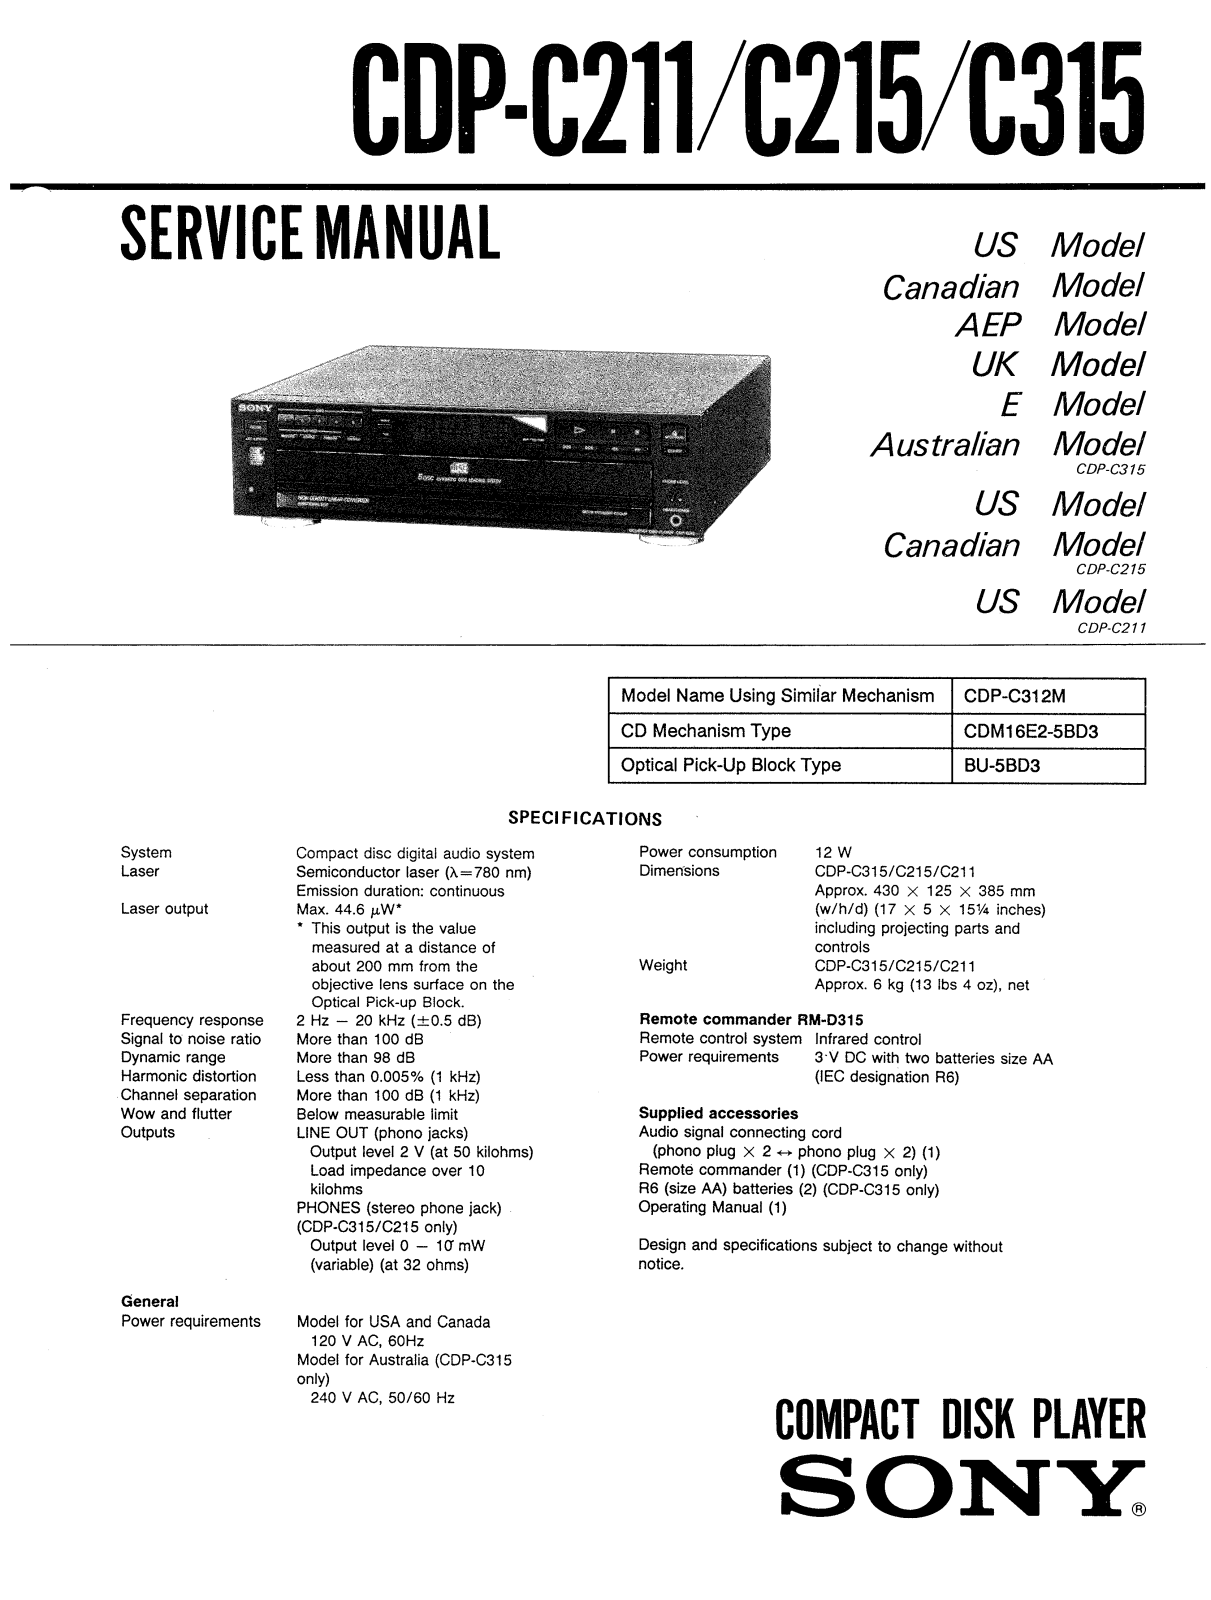 Sony CDPC-211 Service manual